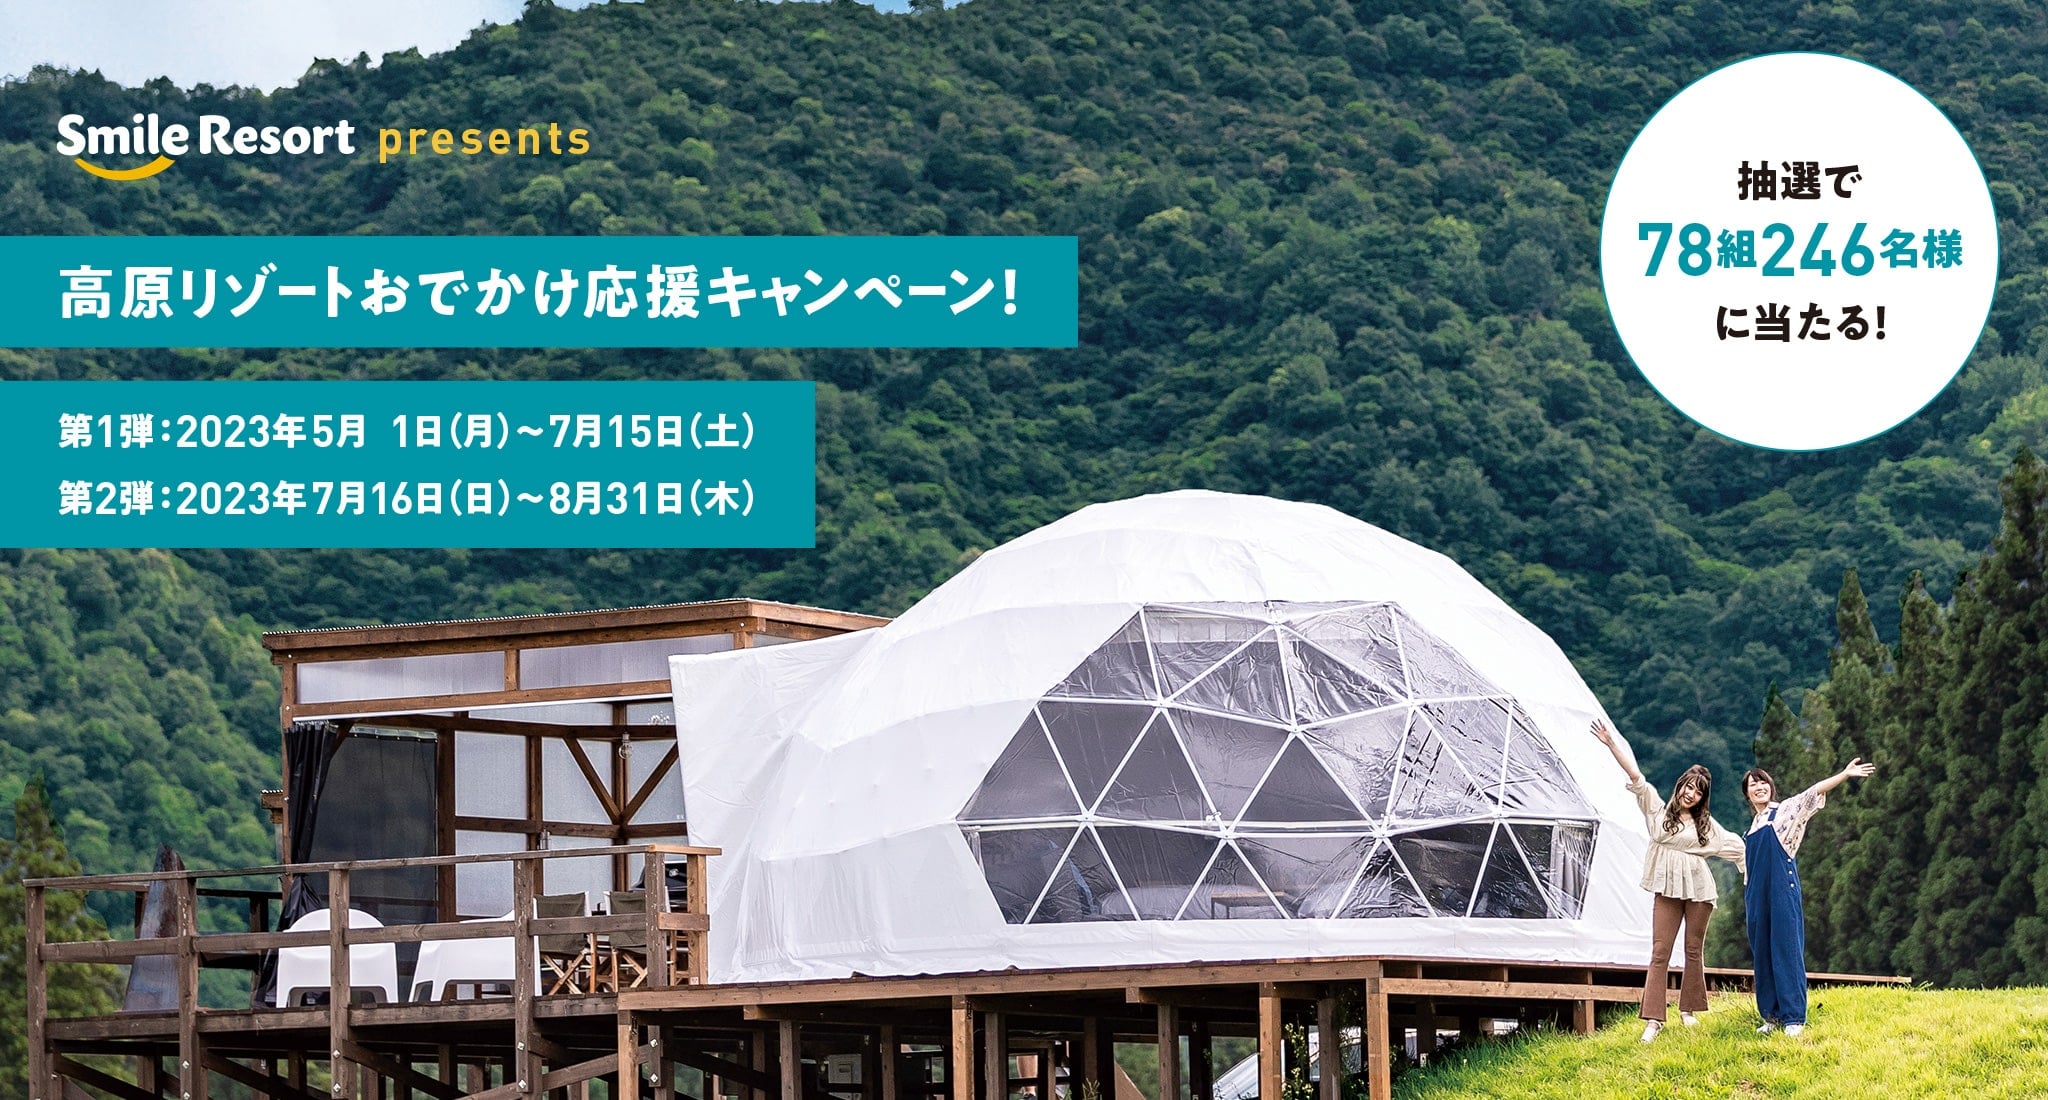 ［スマイルリゾート］Smile Resort presents 高原リゾートおでかけ応援キャンペーン